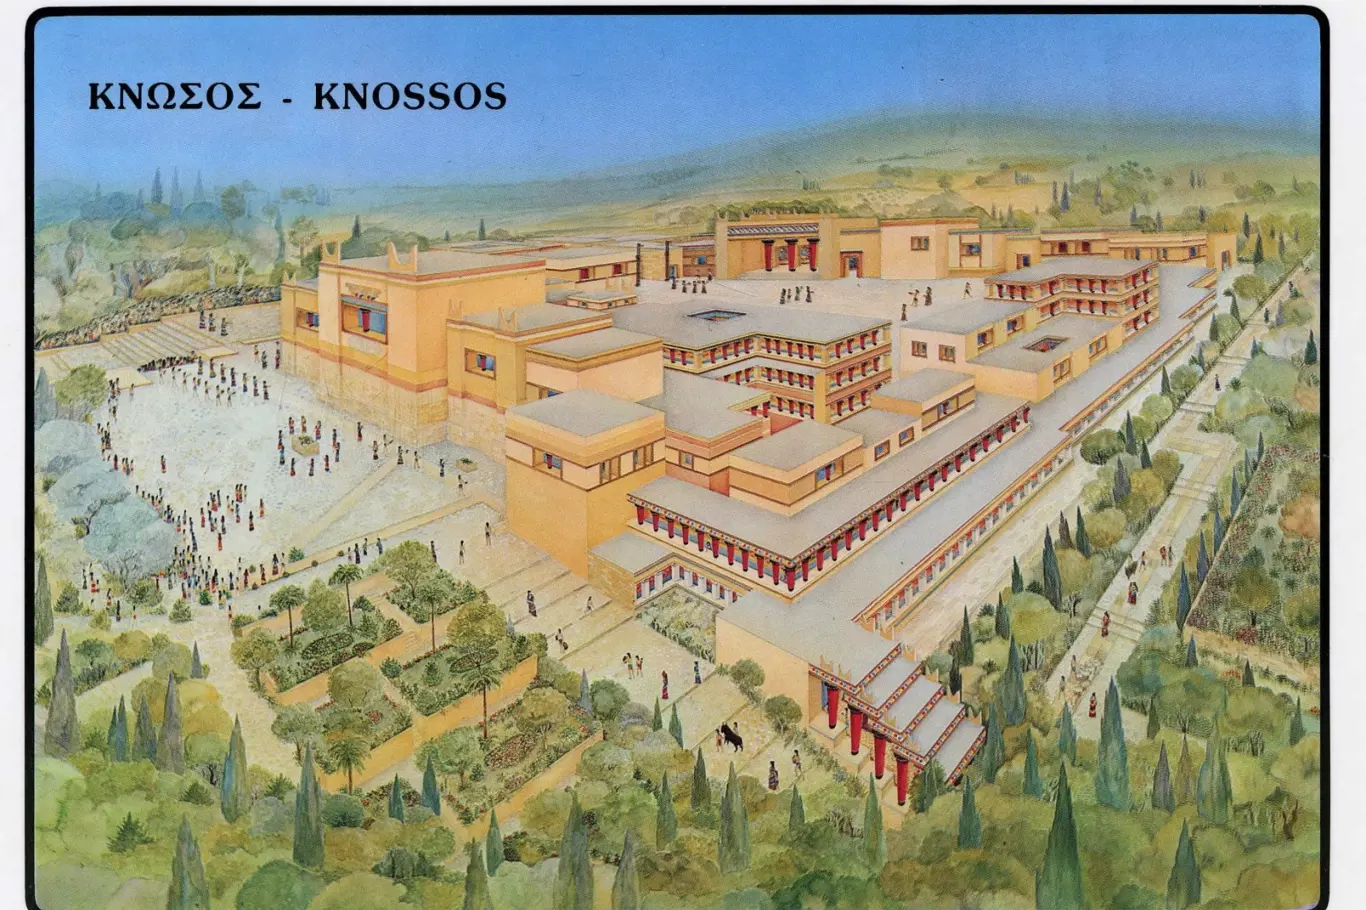 Rekonstrukce paláce v Knóssu